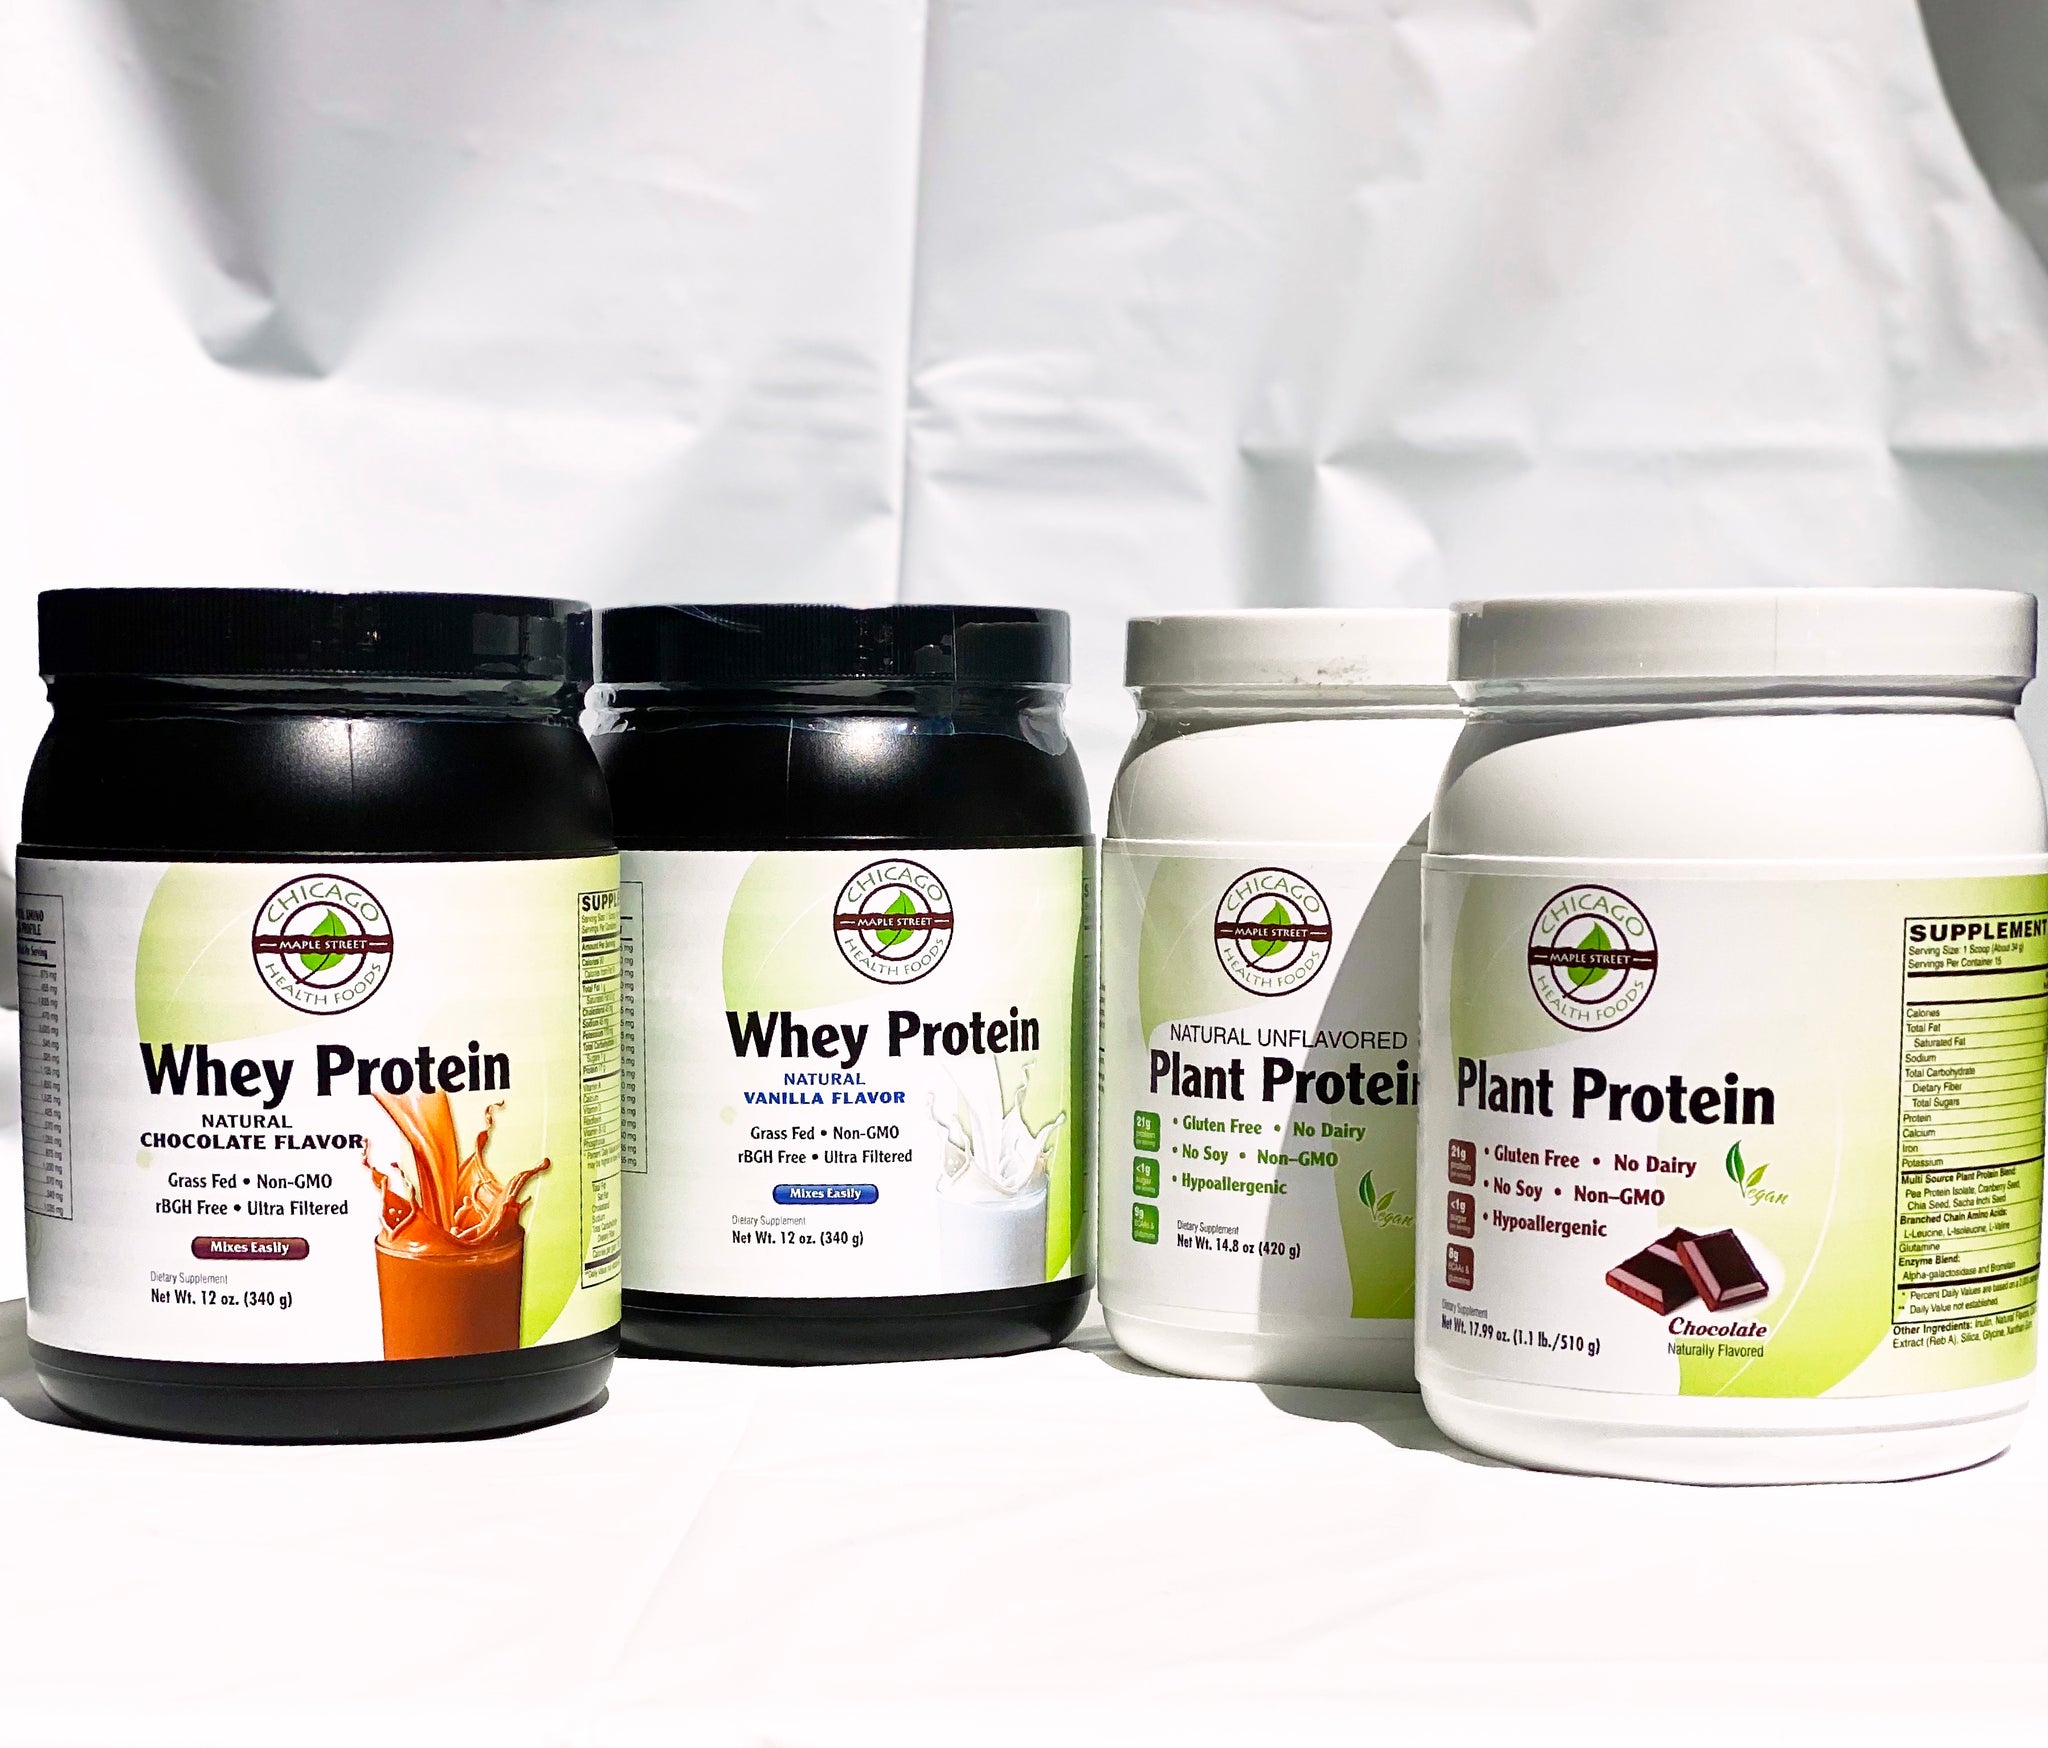 Whey Protein vs. Plant Protein Powder?